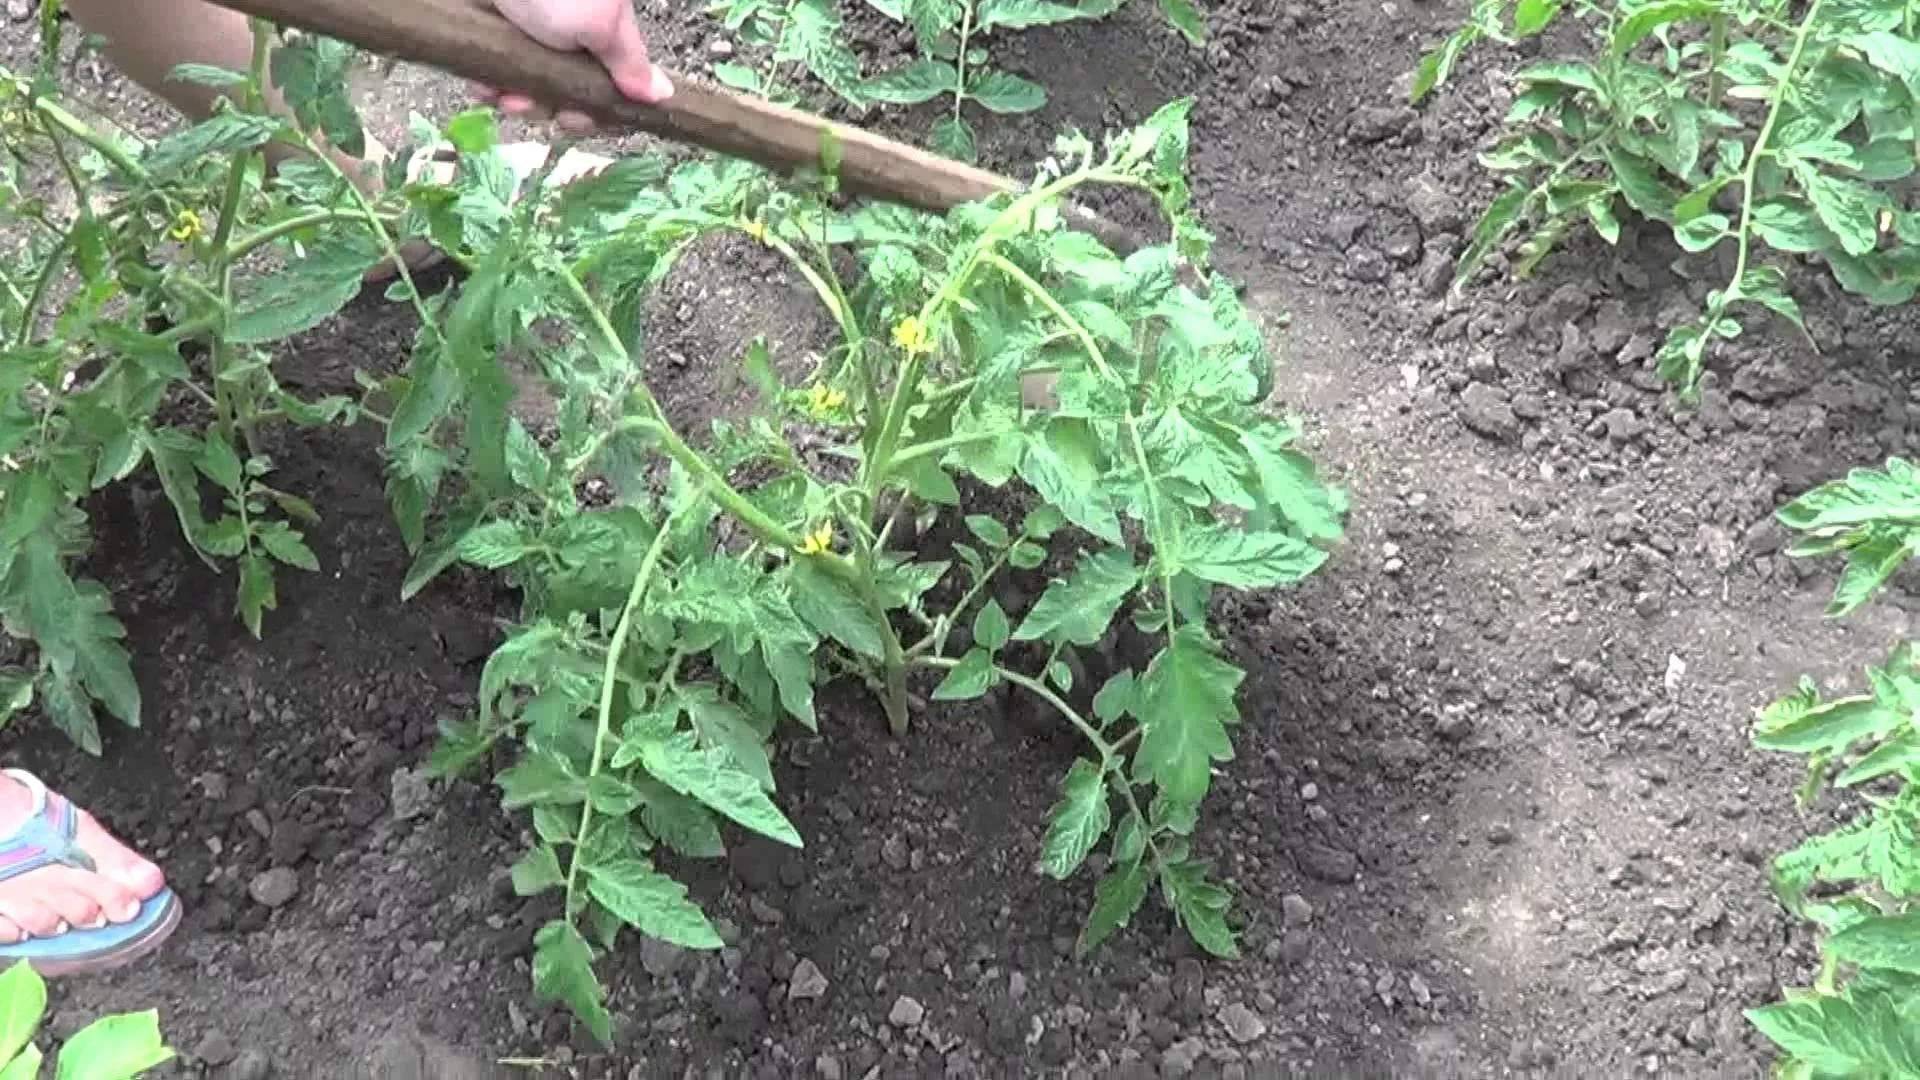 Посадка томатов в теплицу: сроки, схема, последующий уход selo.guru — интернет портал о сельском хозяйстве